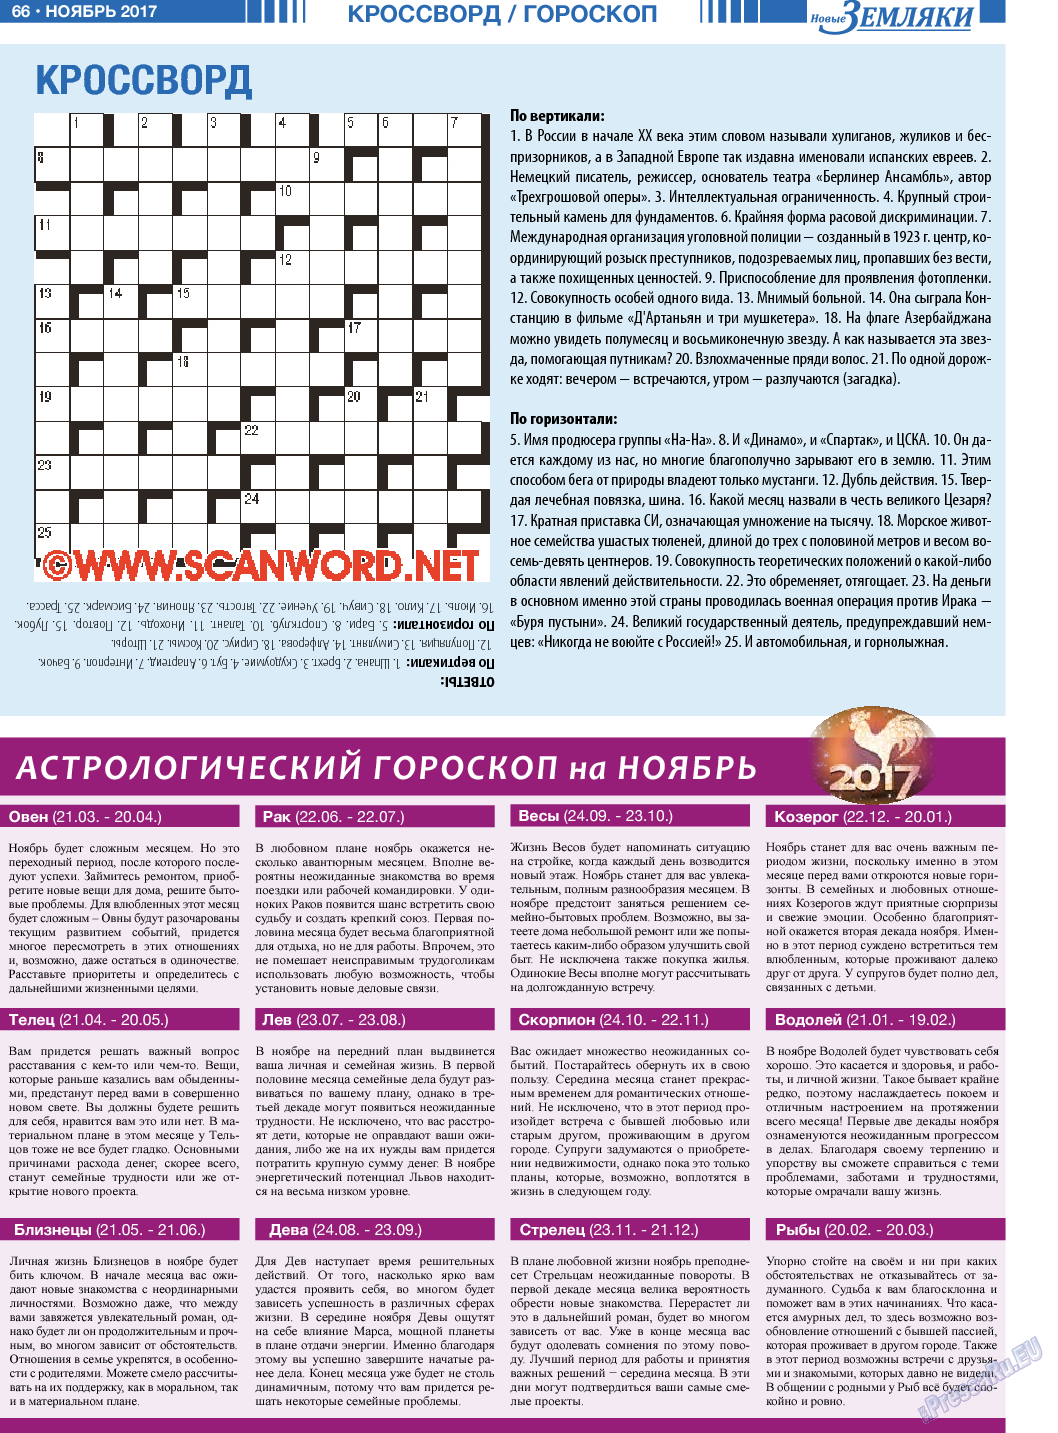 Новые Земляки (газета). 2017 год, номер 11, стр. 66